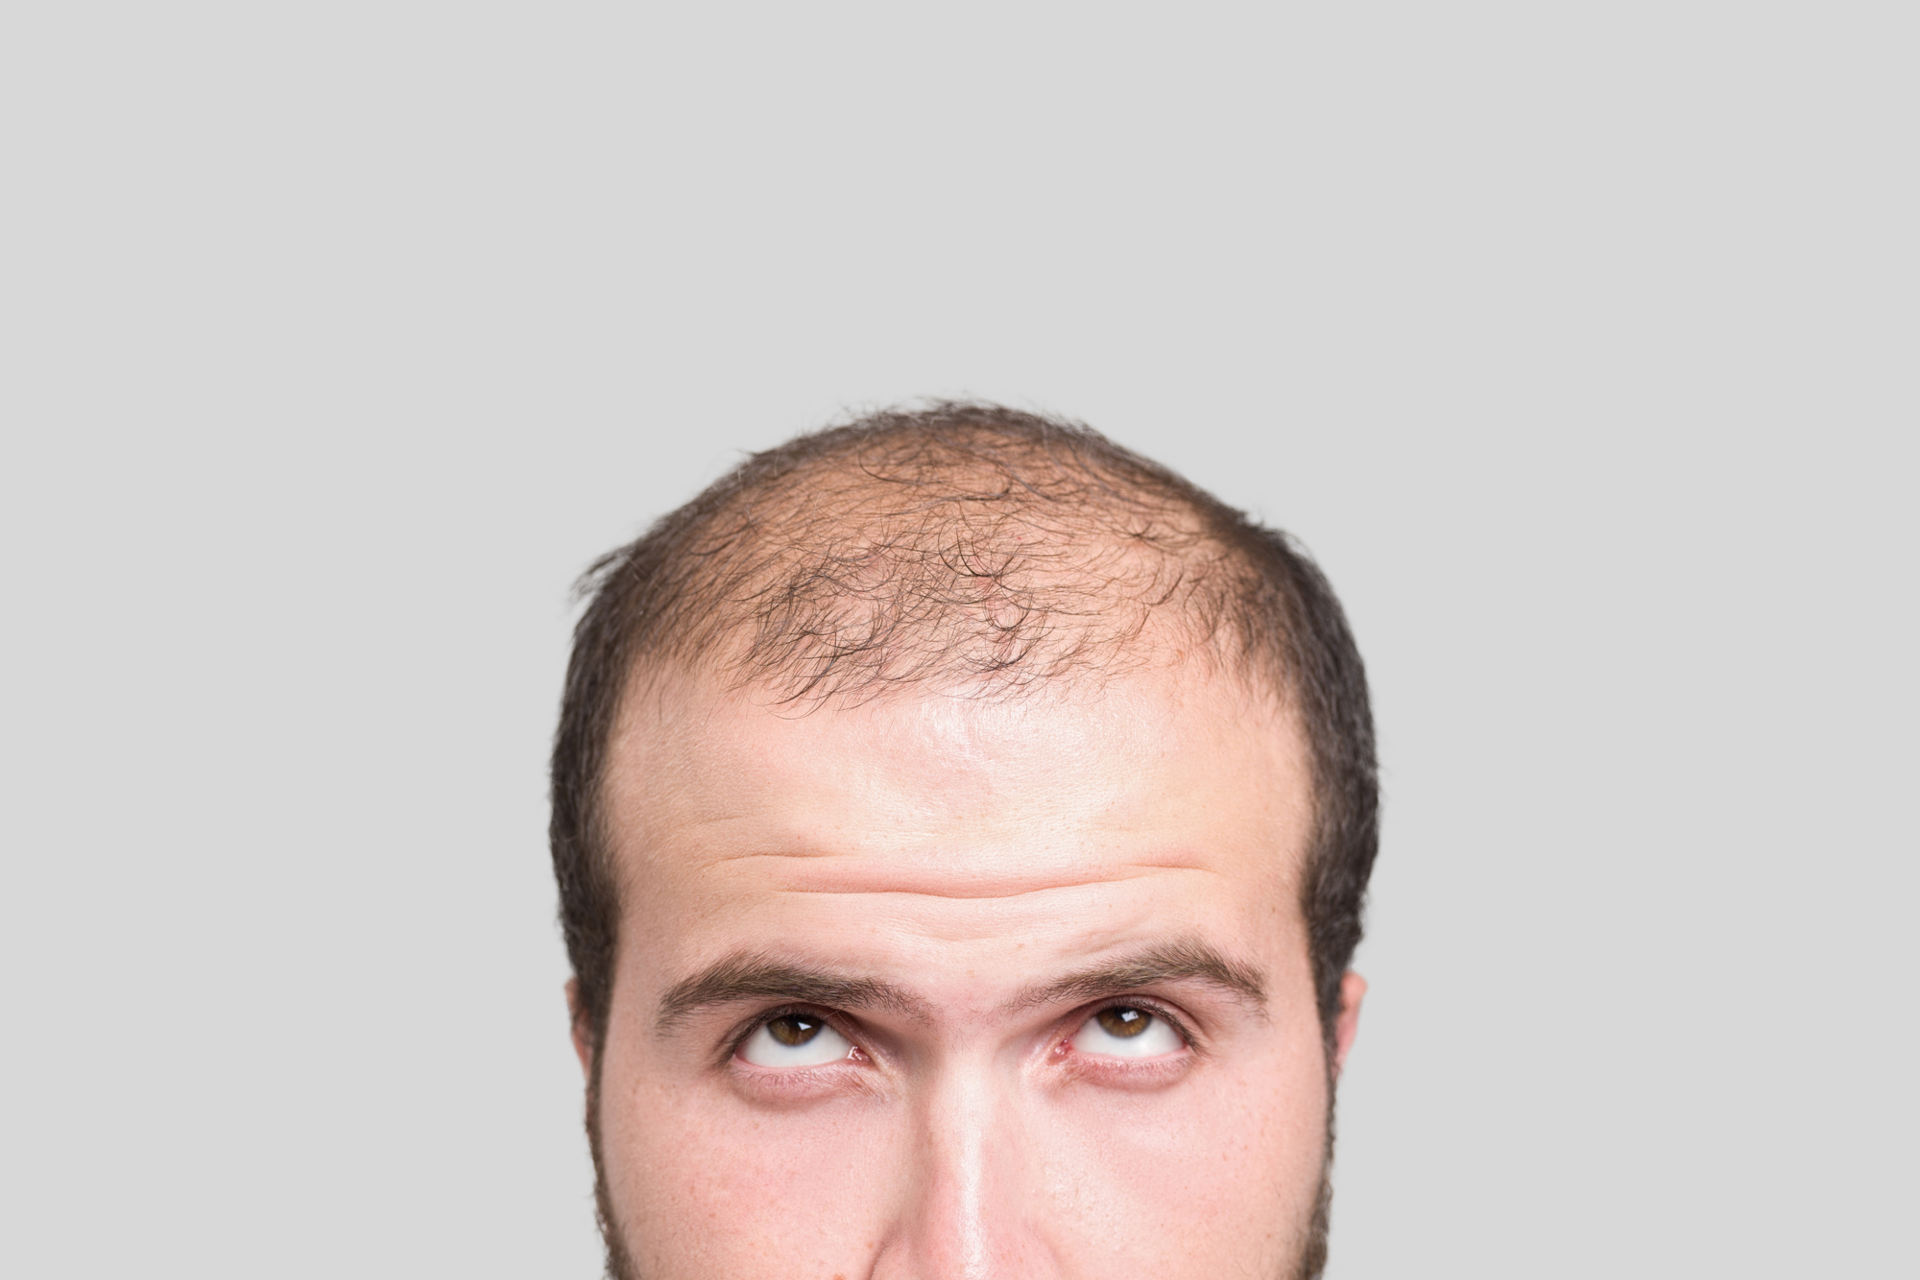 Haarausfall bei Männern - Was ist die Ursache?